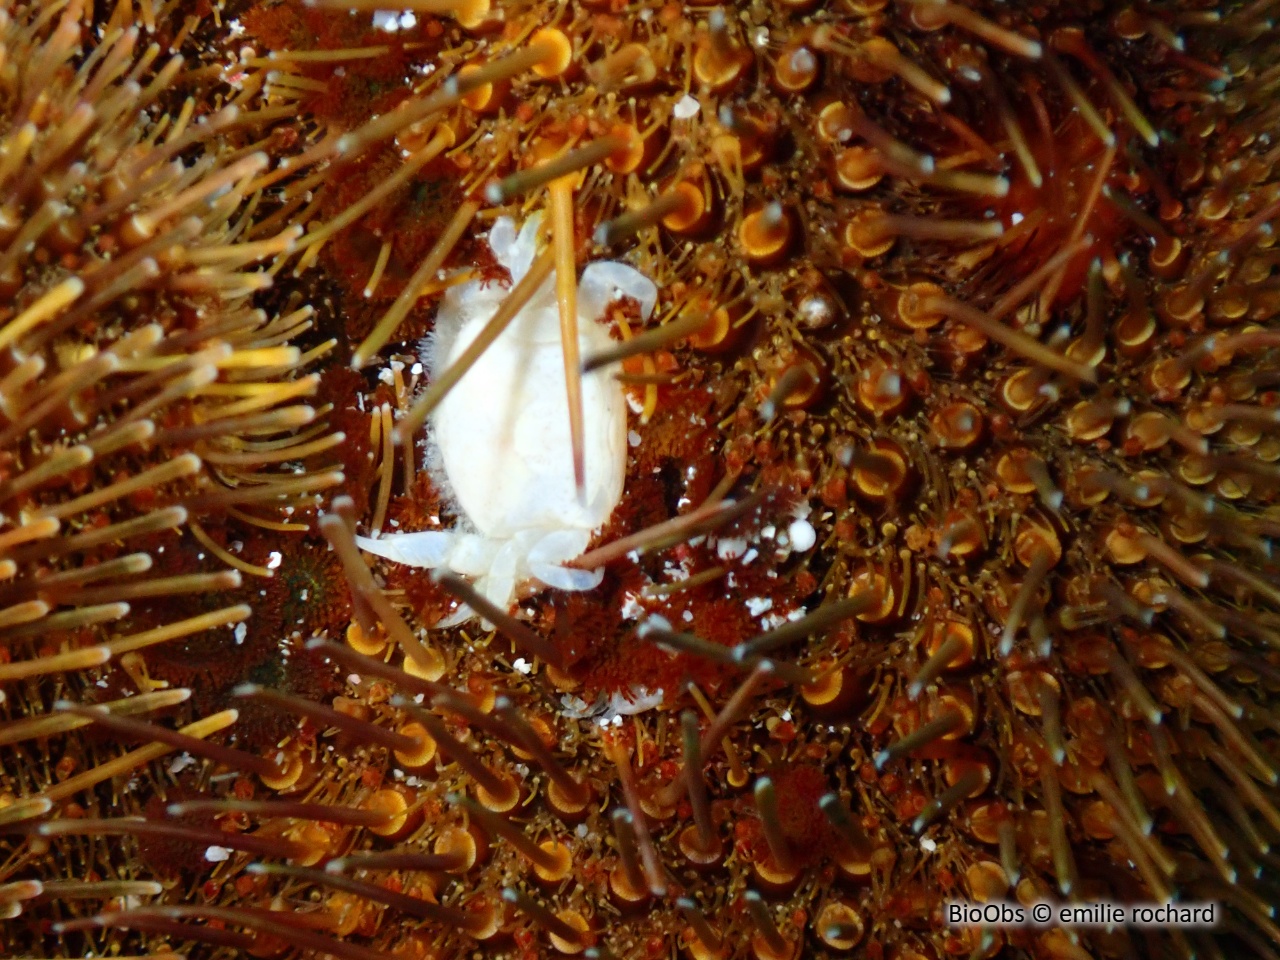 Crabe-pois des spatangues - Dissodactylus primitivus - emilie rochard - BioObs